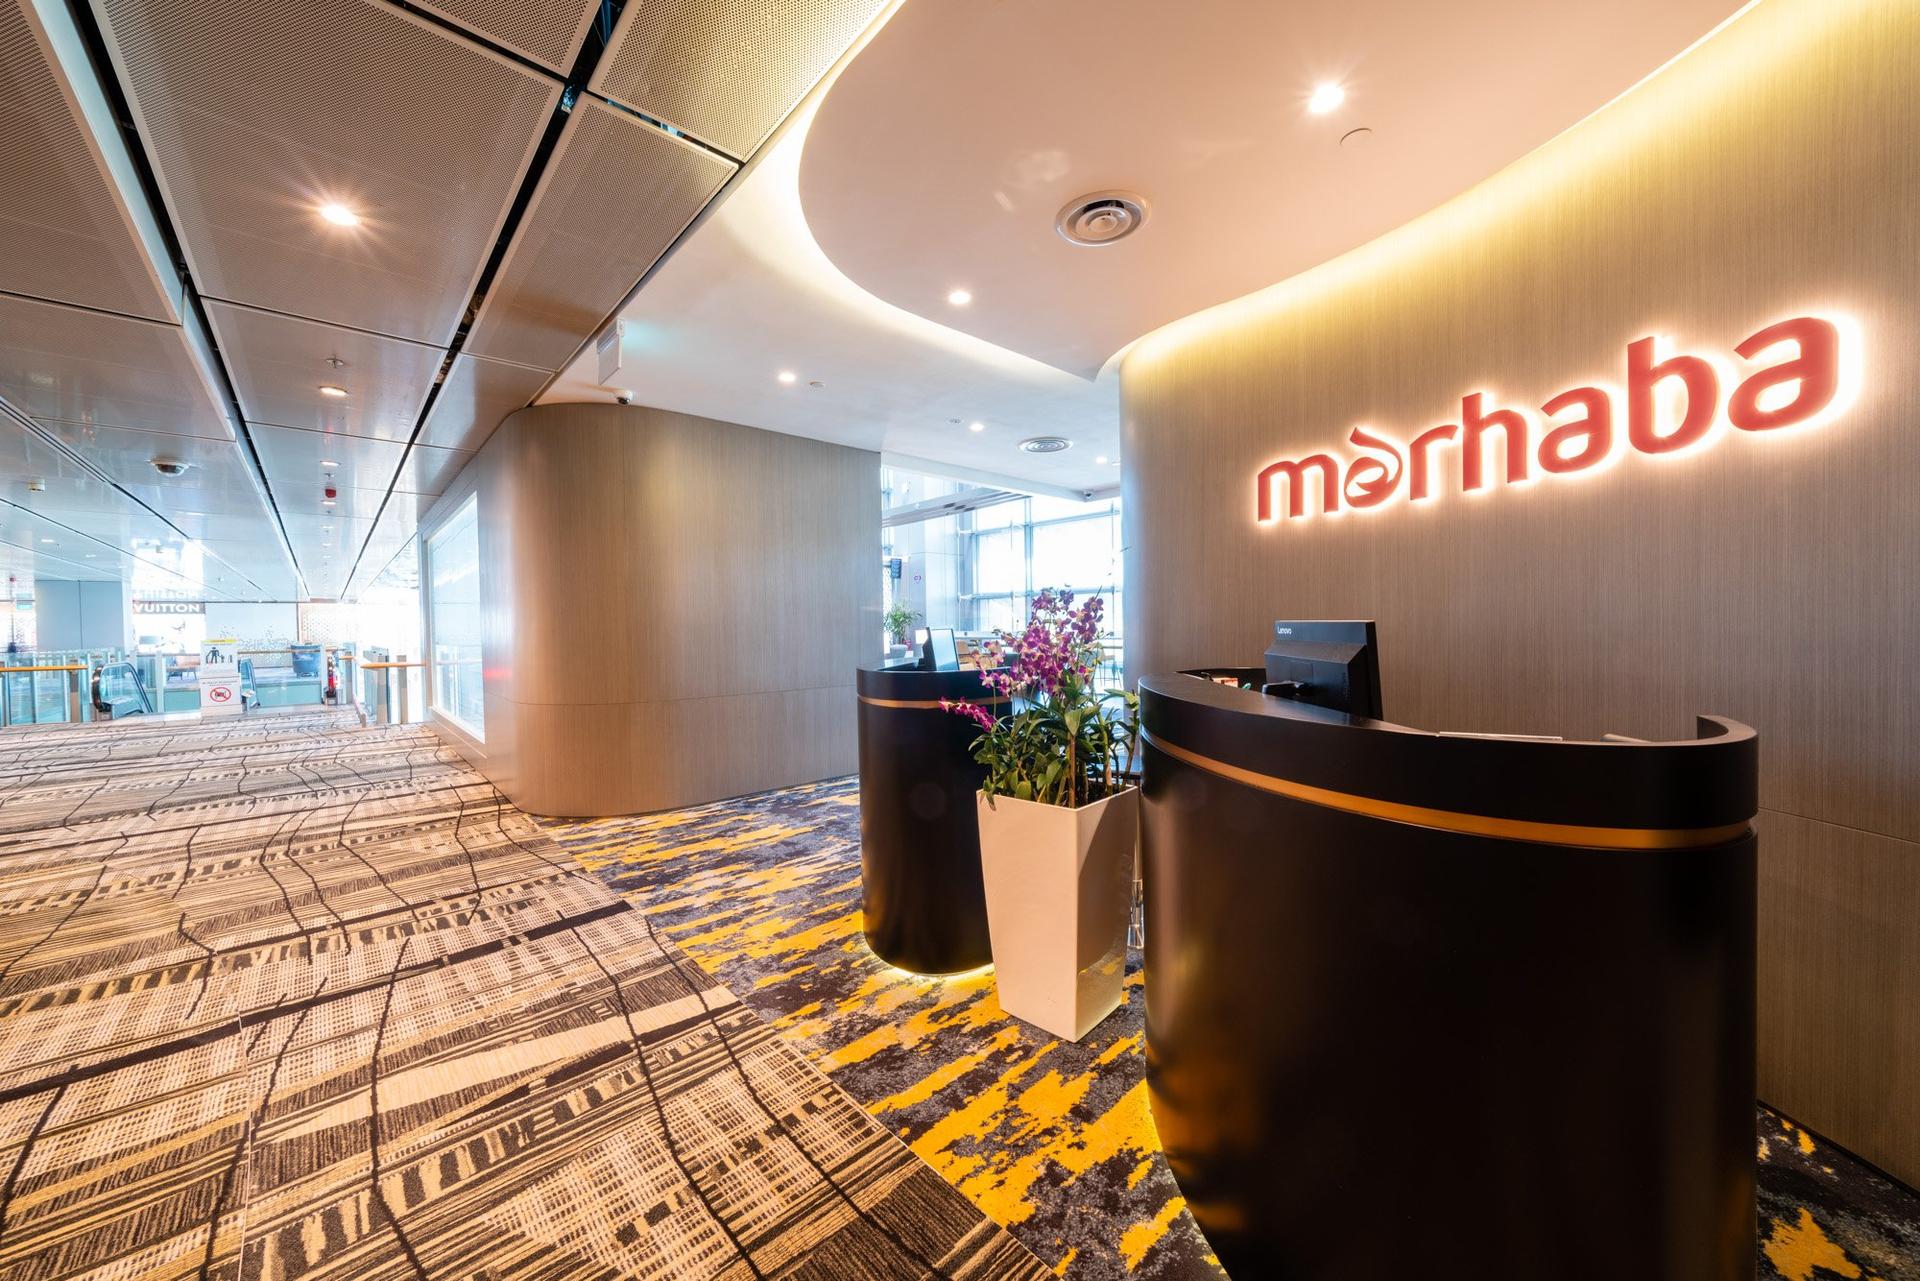 Marhaba Lounge image 26 of 57